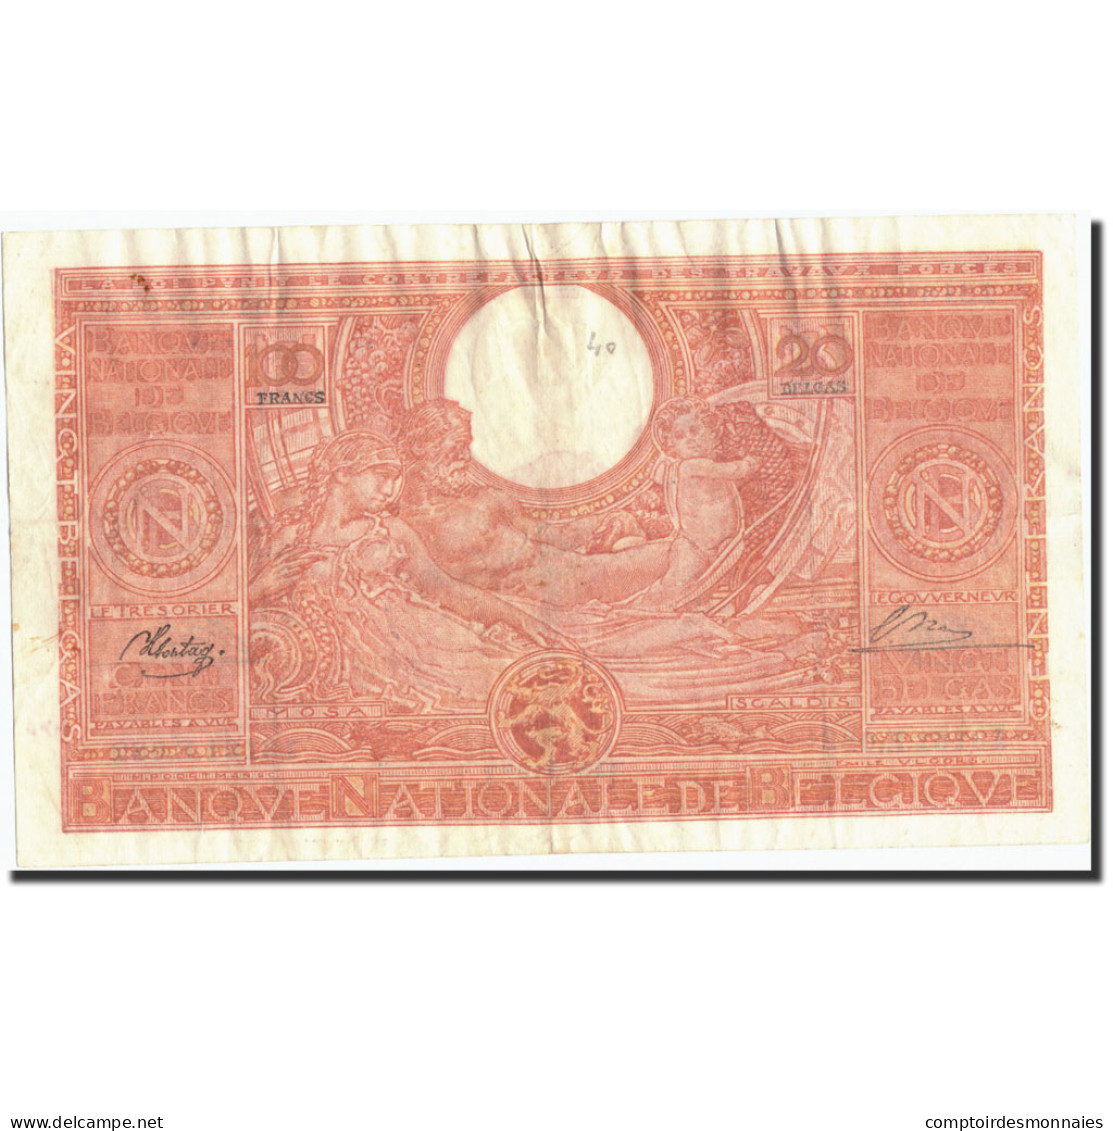 Billet, Belgique, 100 Francs-20 Belgas, 1944, 1944-11-04, KM:113, TB+ - 100 Frank-20 Belgas